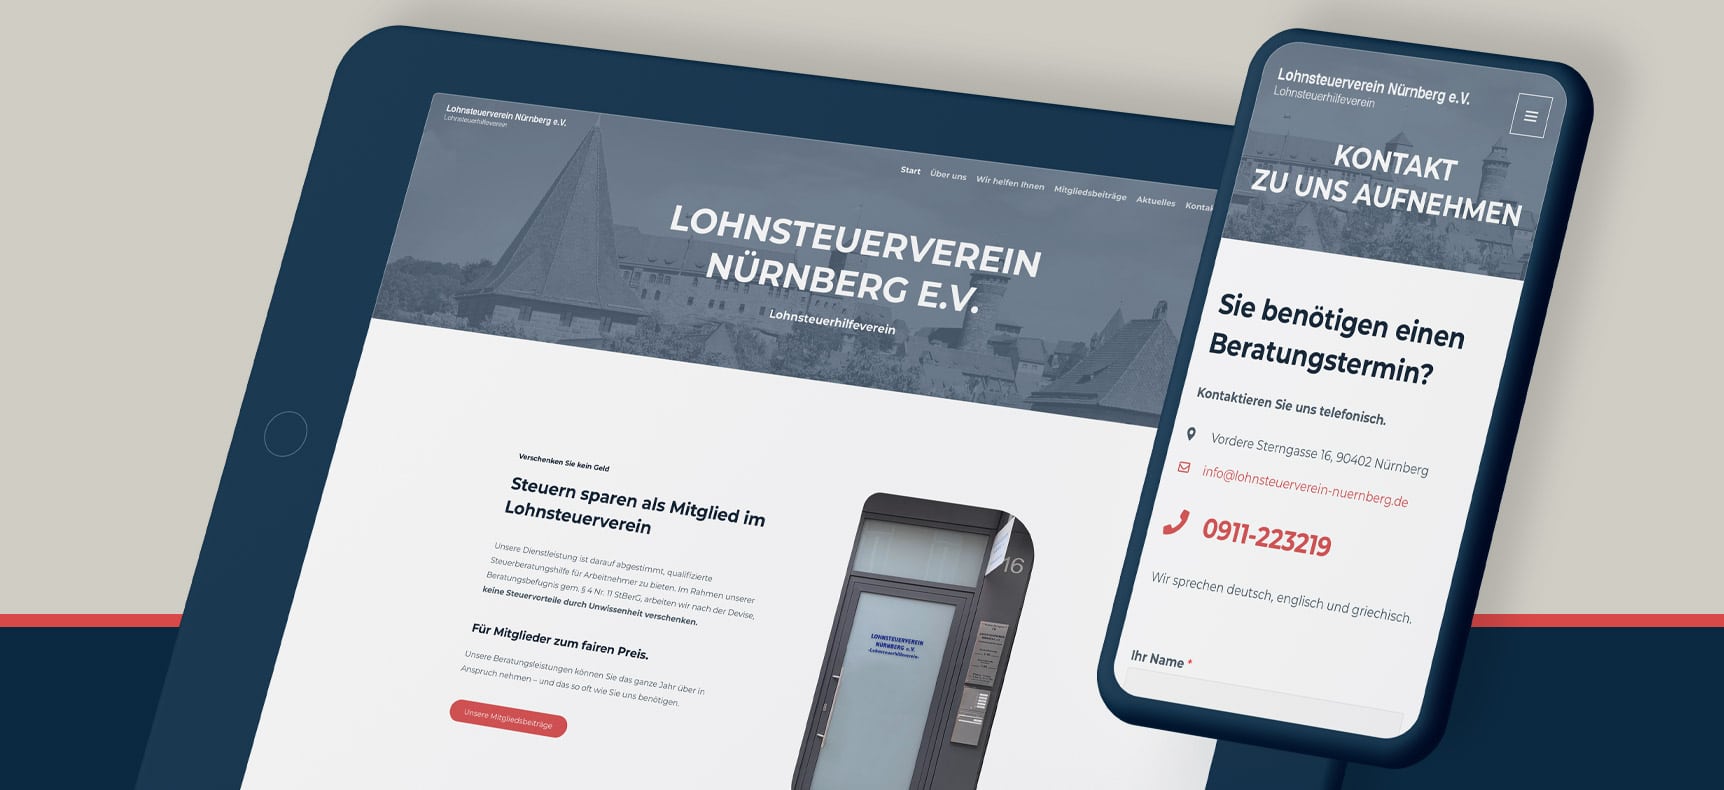 Lohnsteuerverein Nürnberg e.V. | Website erstellt von StatusZwo.com